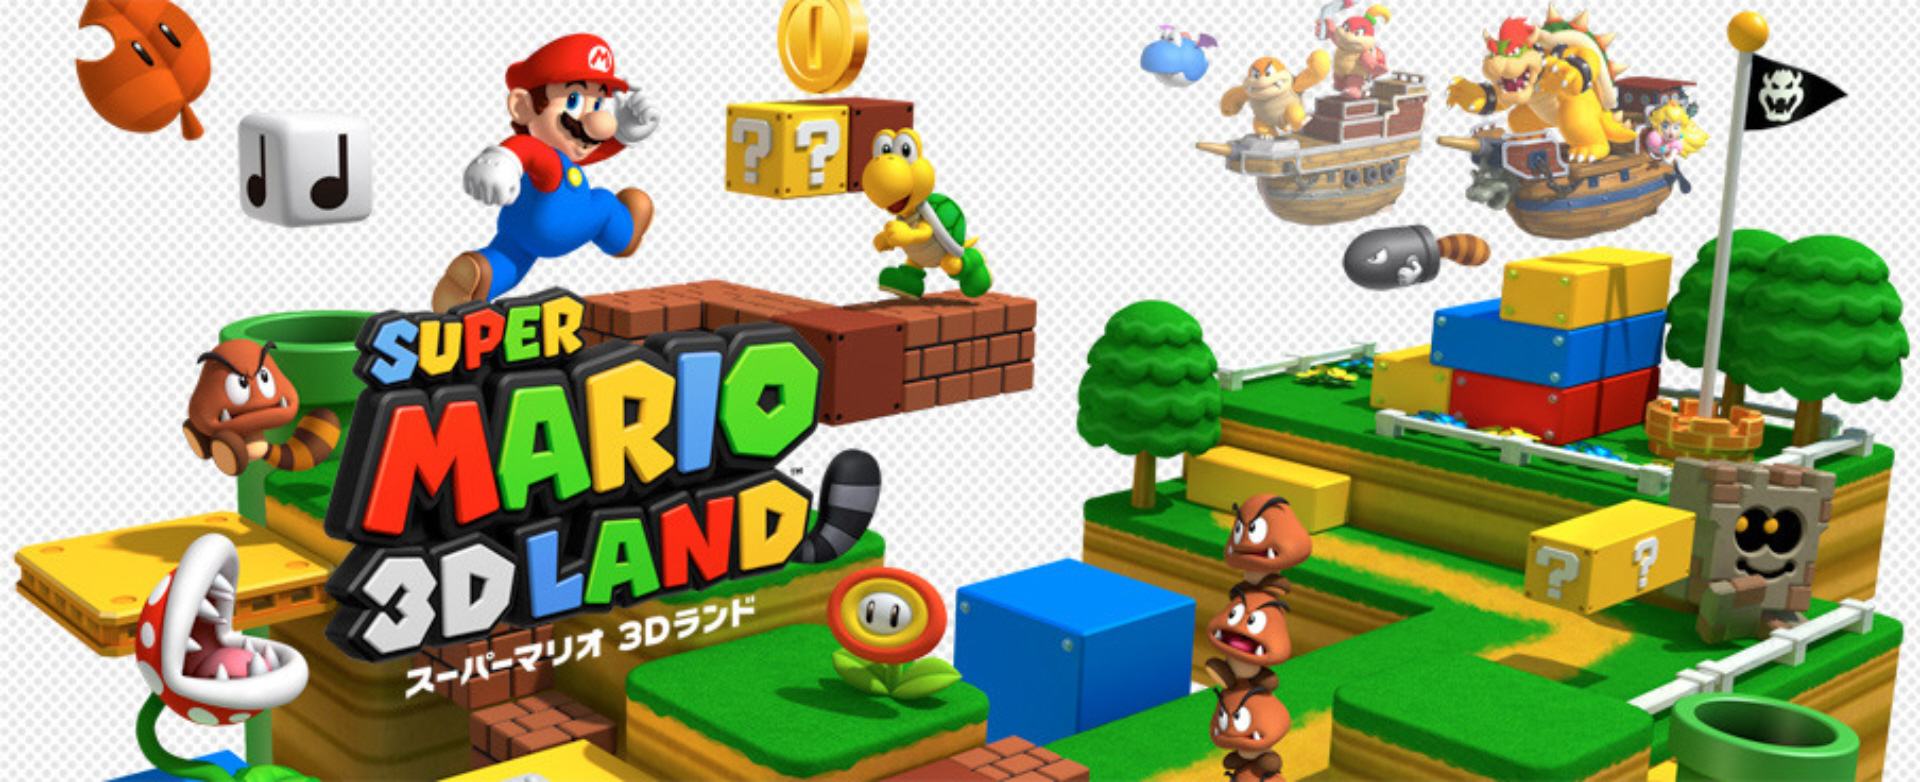 Super Mario 3D Land Wallpaper